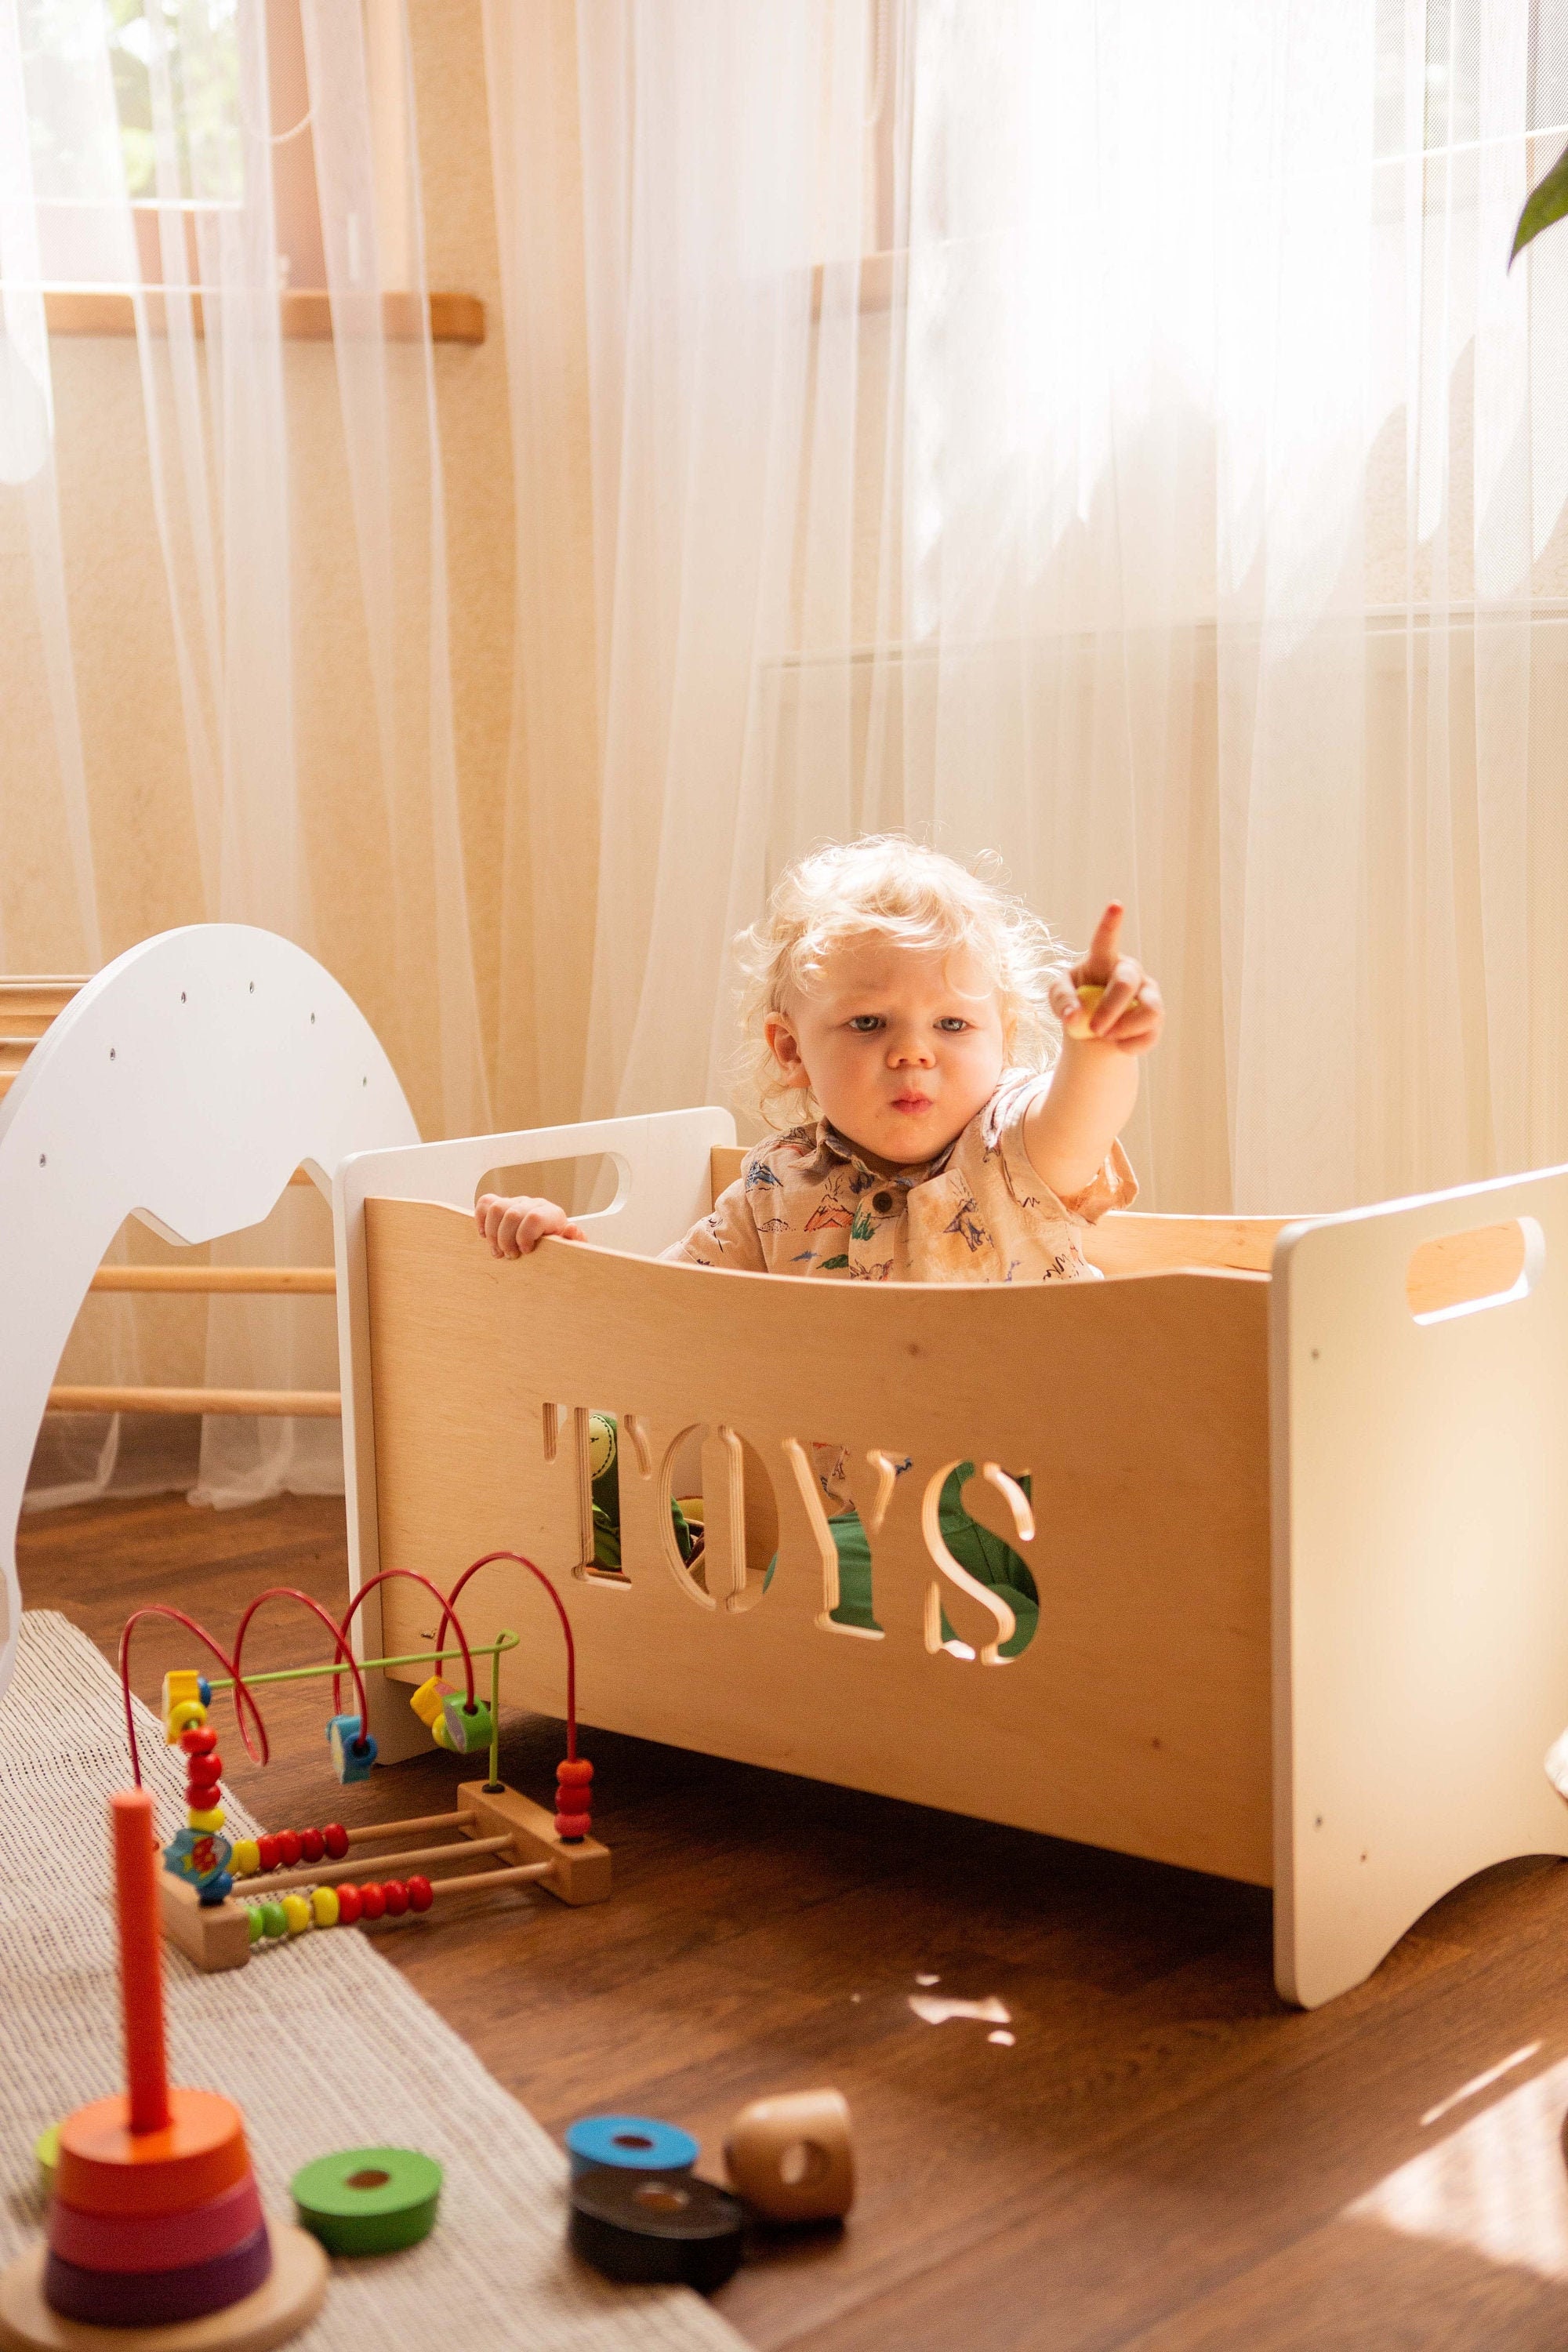 Wooden Toy Chest Storage Box / Bench Seat Kids Furniture 27 x 16 x 1 –